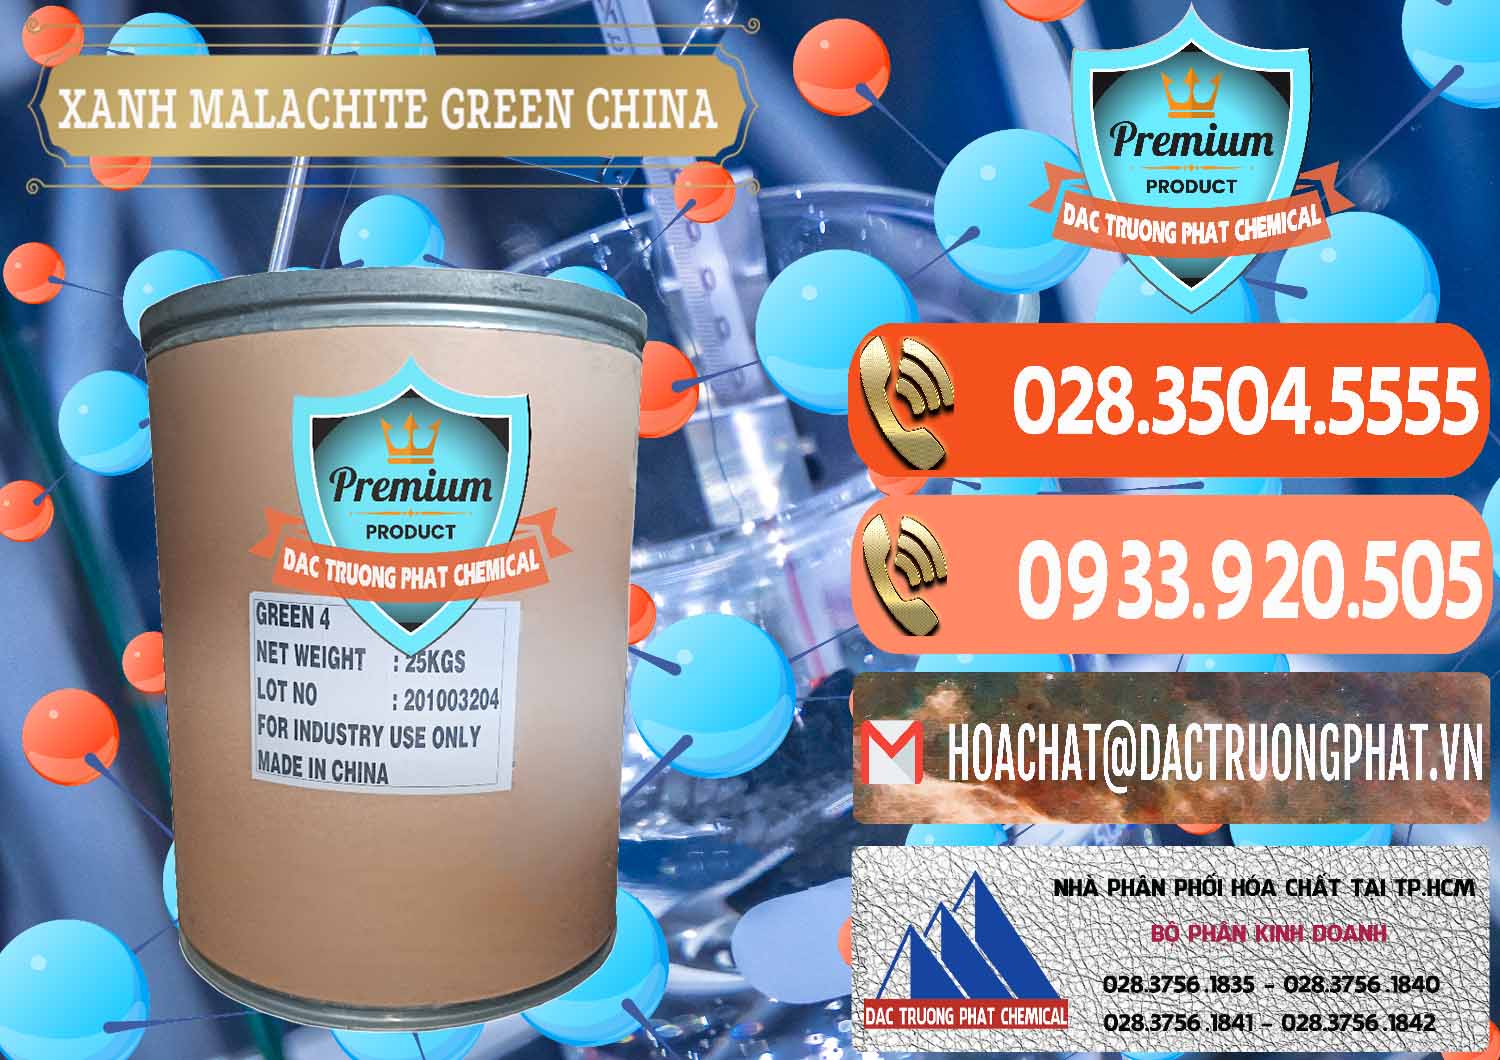 Phân phối & bán Xanh Malachite Green Trung Quốc China - 0325 - Công ty nhập khẩu - cung cấp hóa chất tại TP.HCM - hoachatmientay.com